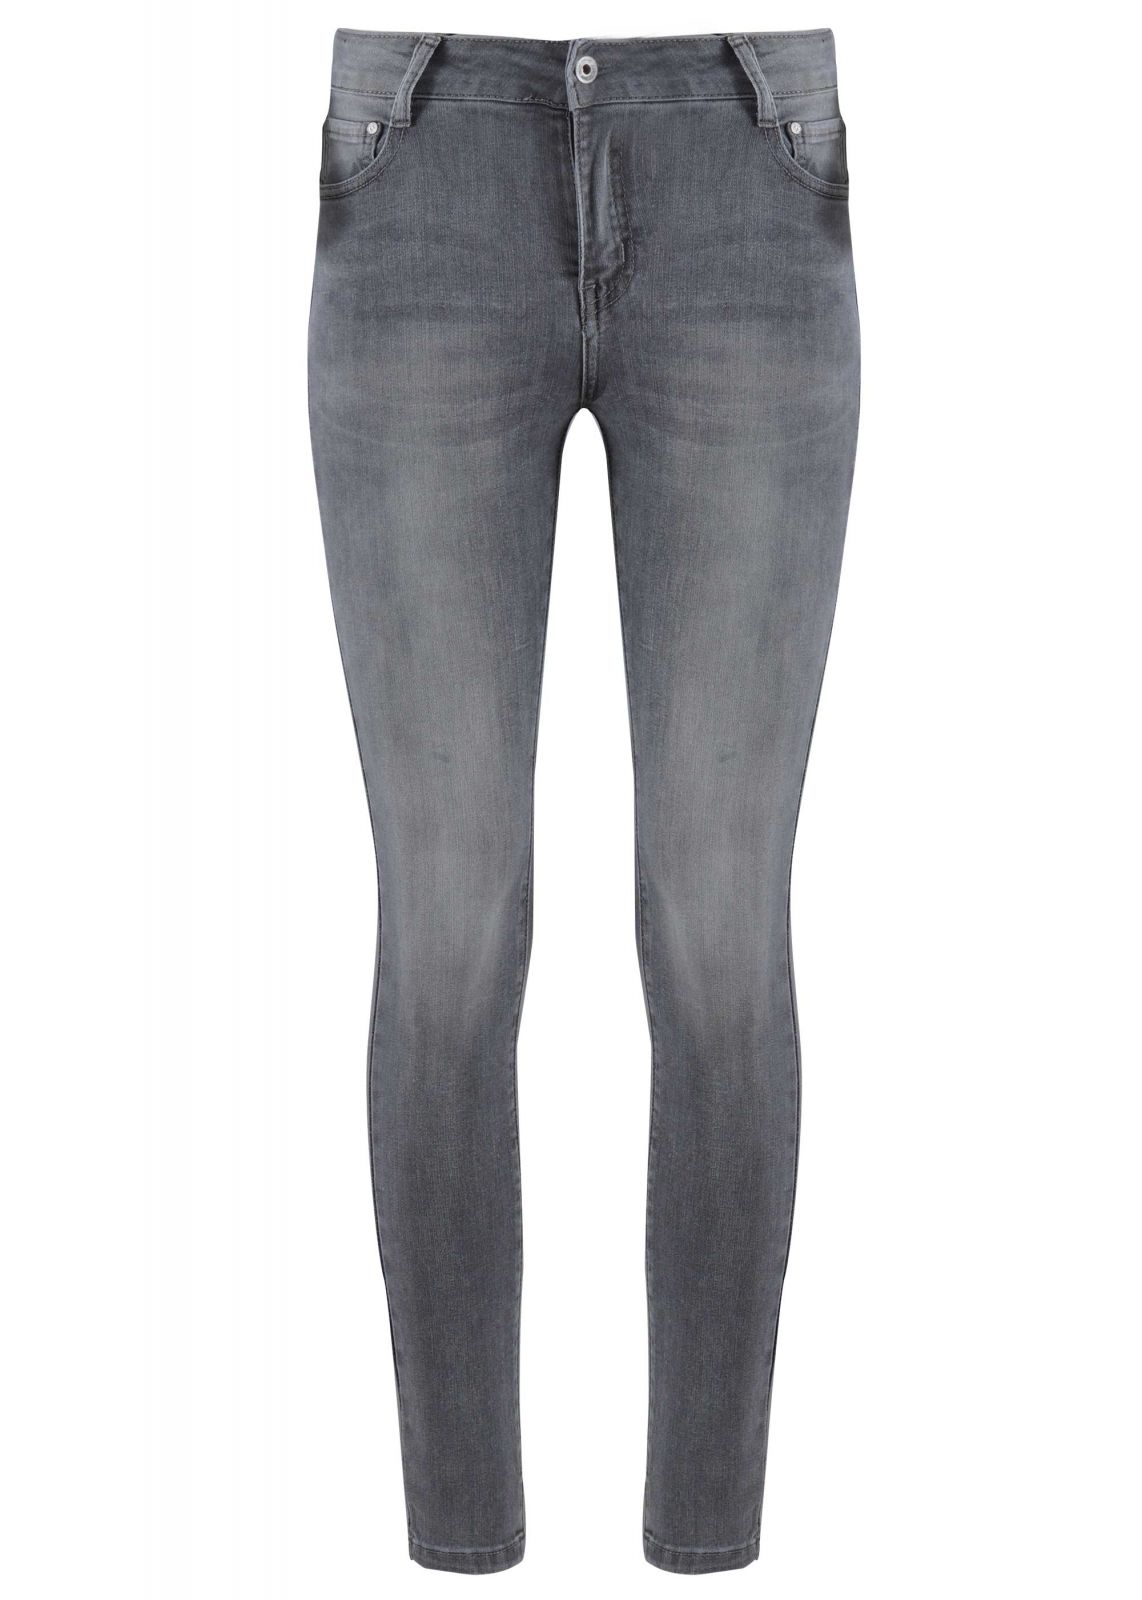 Γυναικείο παντελόνι jean ελαφριά ξεβάμματα γραμμή skinny. Denim Collection